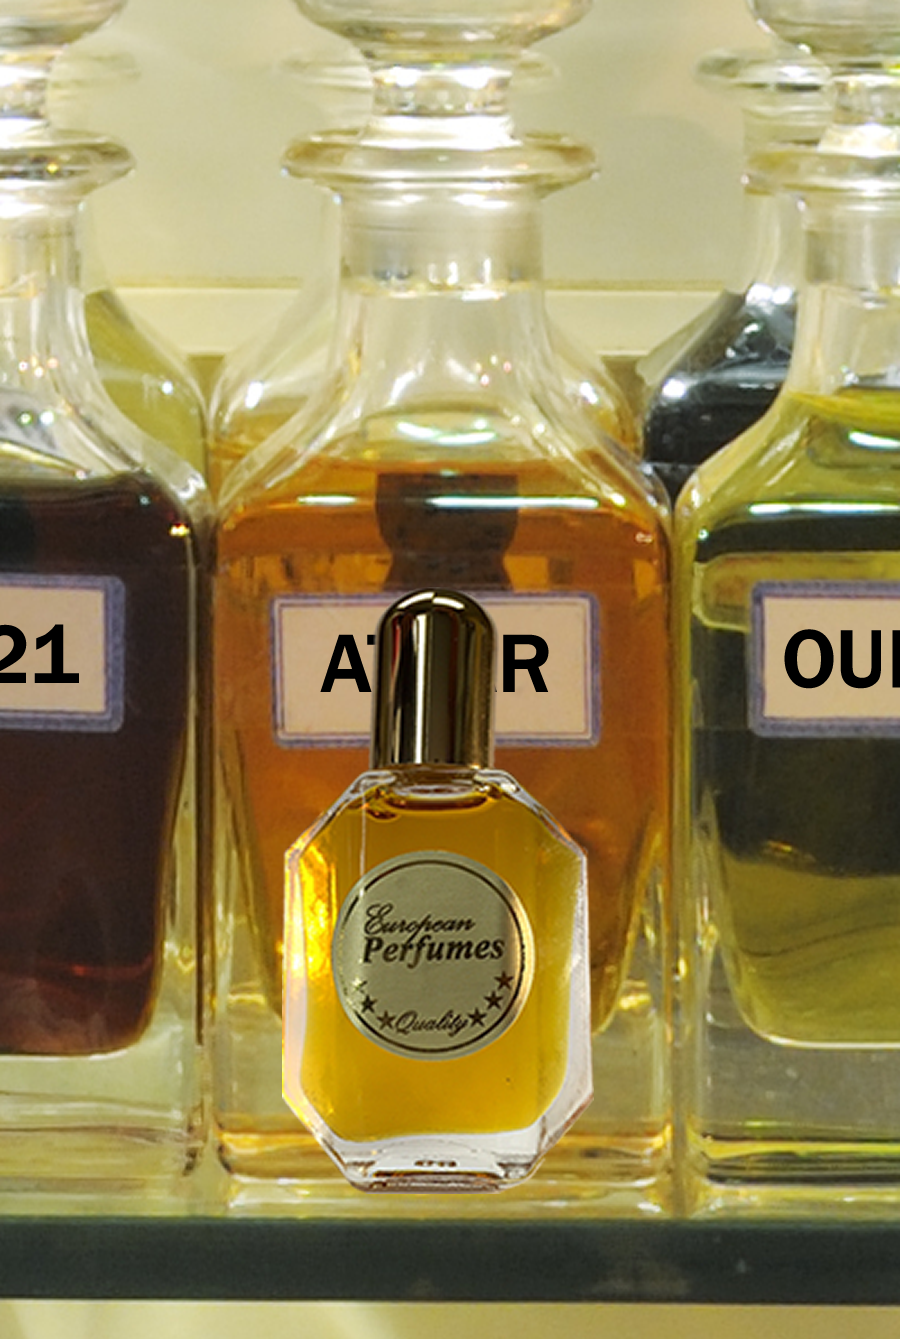 PRADA AMBER Type Perfume Oil Men